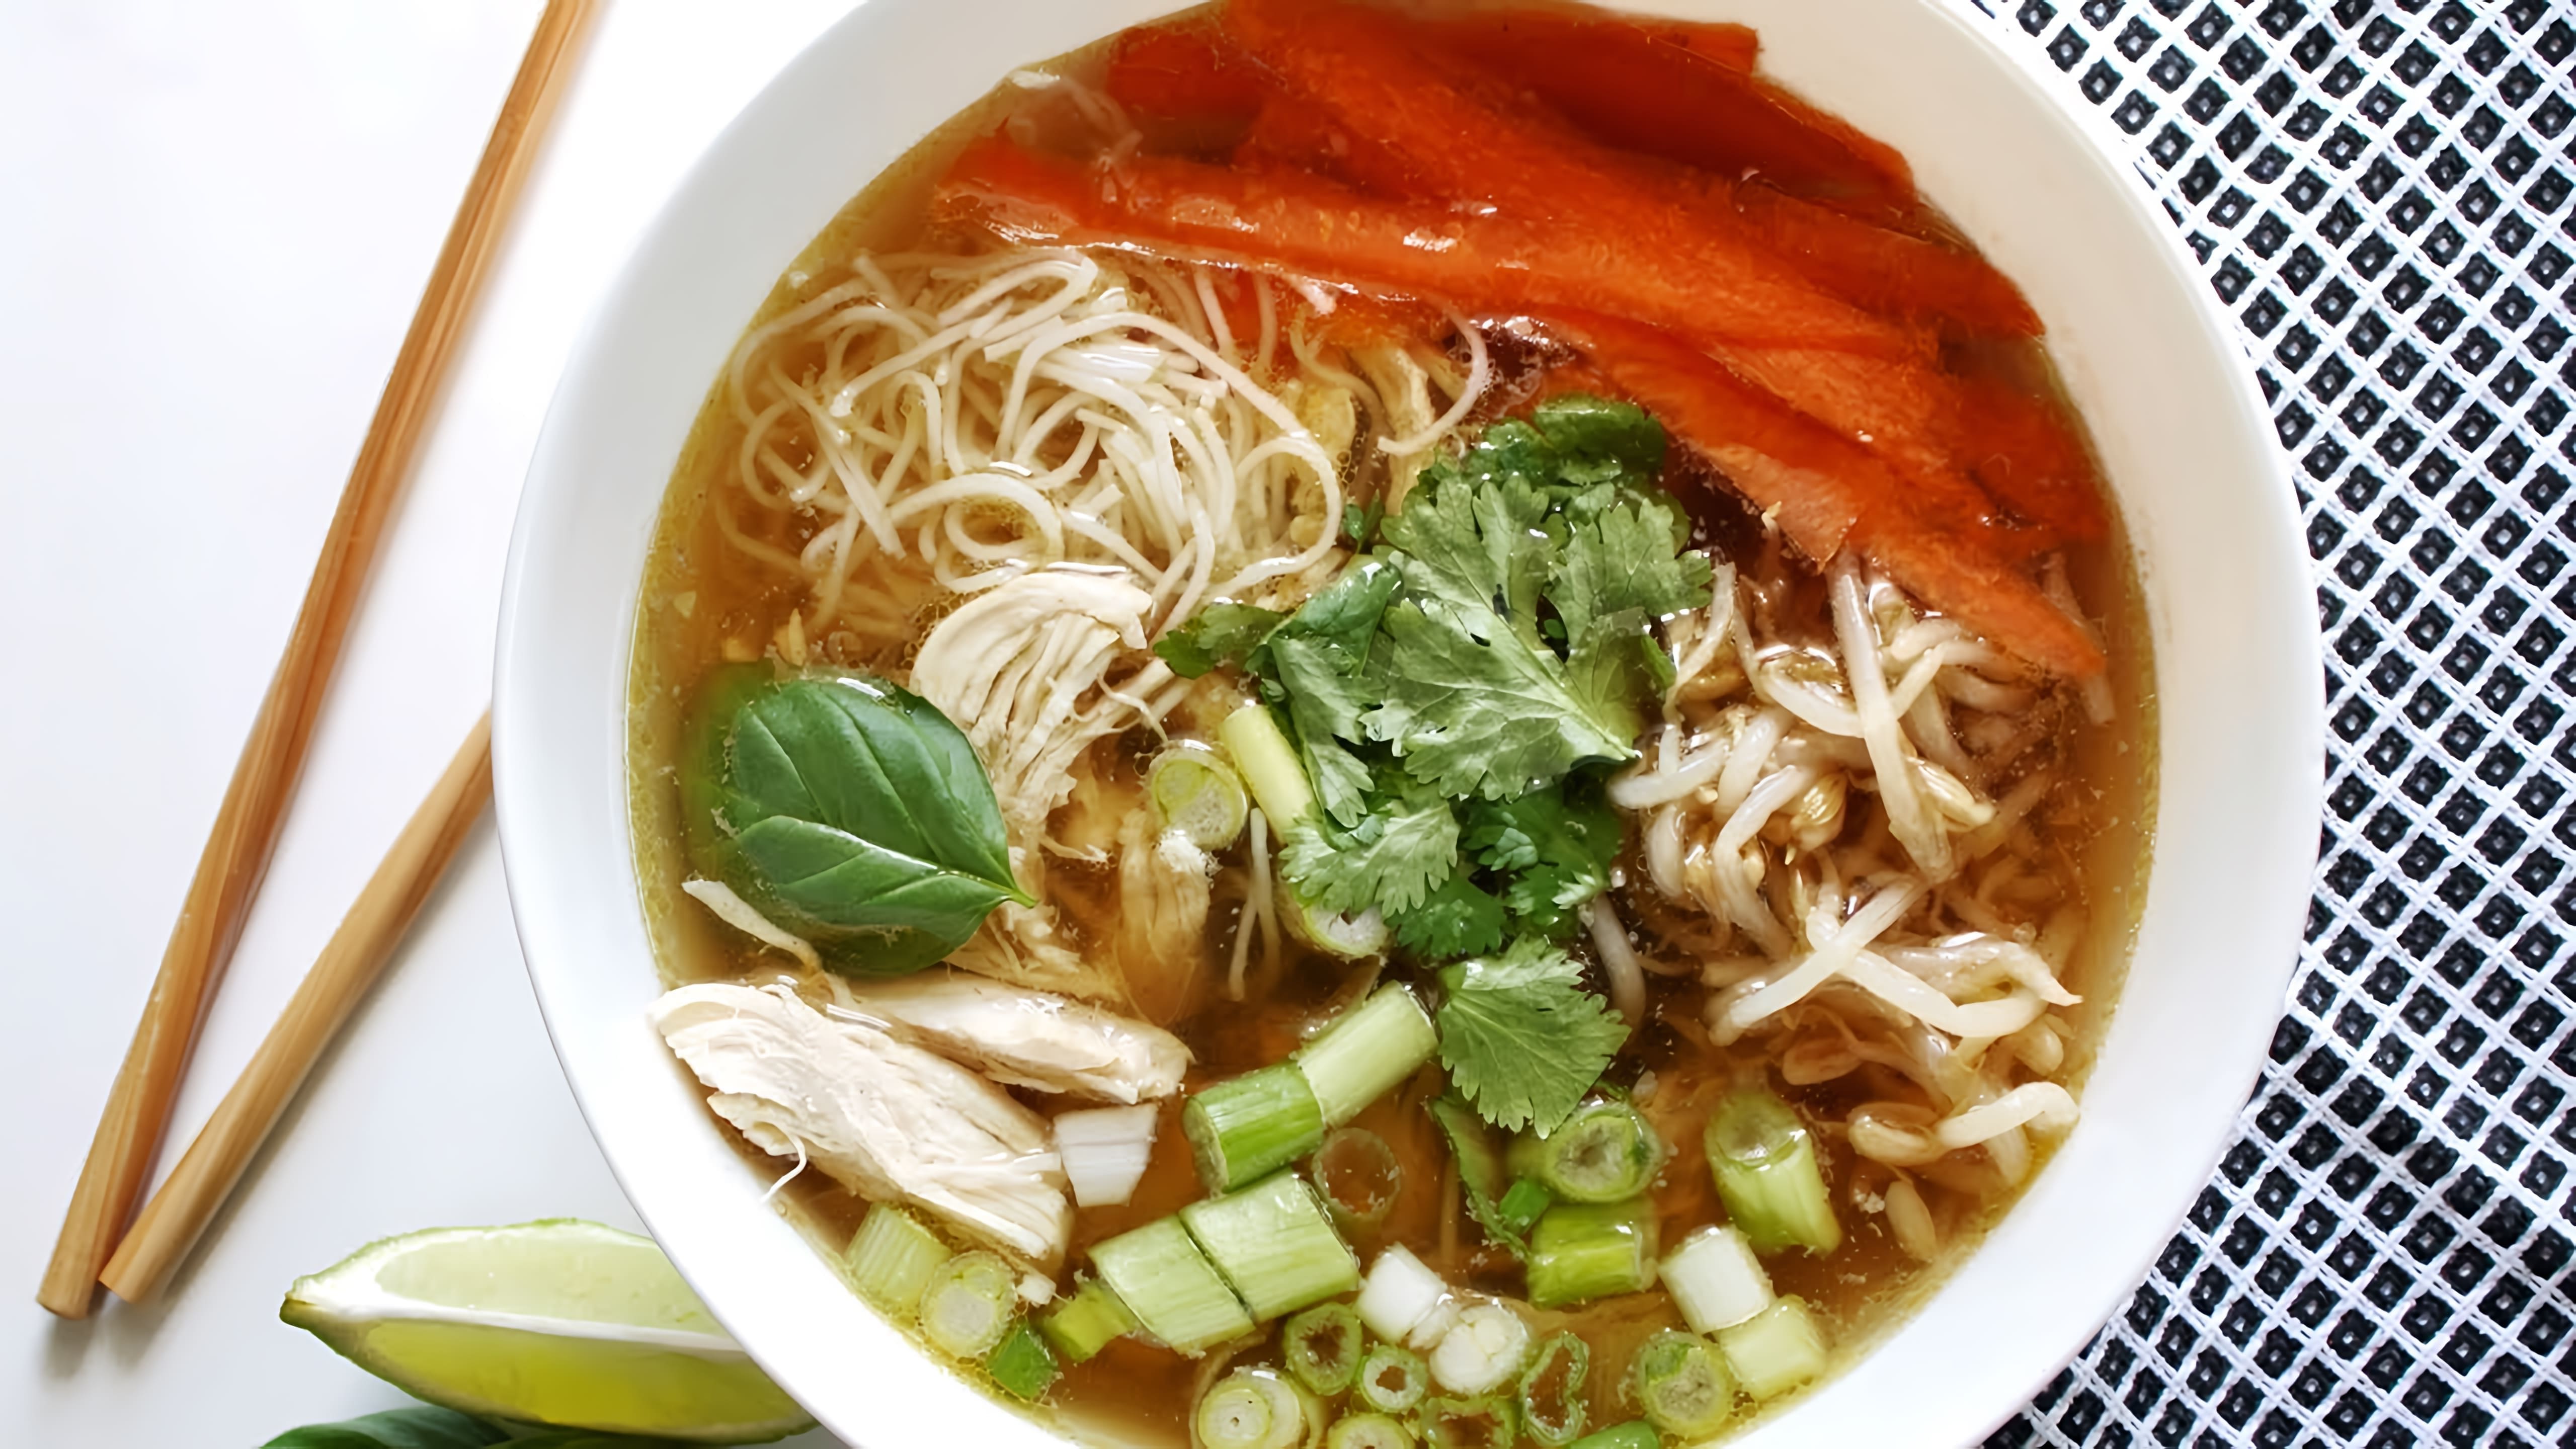 В этом видео демонстрируется рецепт приготовления куриного супа с рисовой лапшой